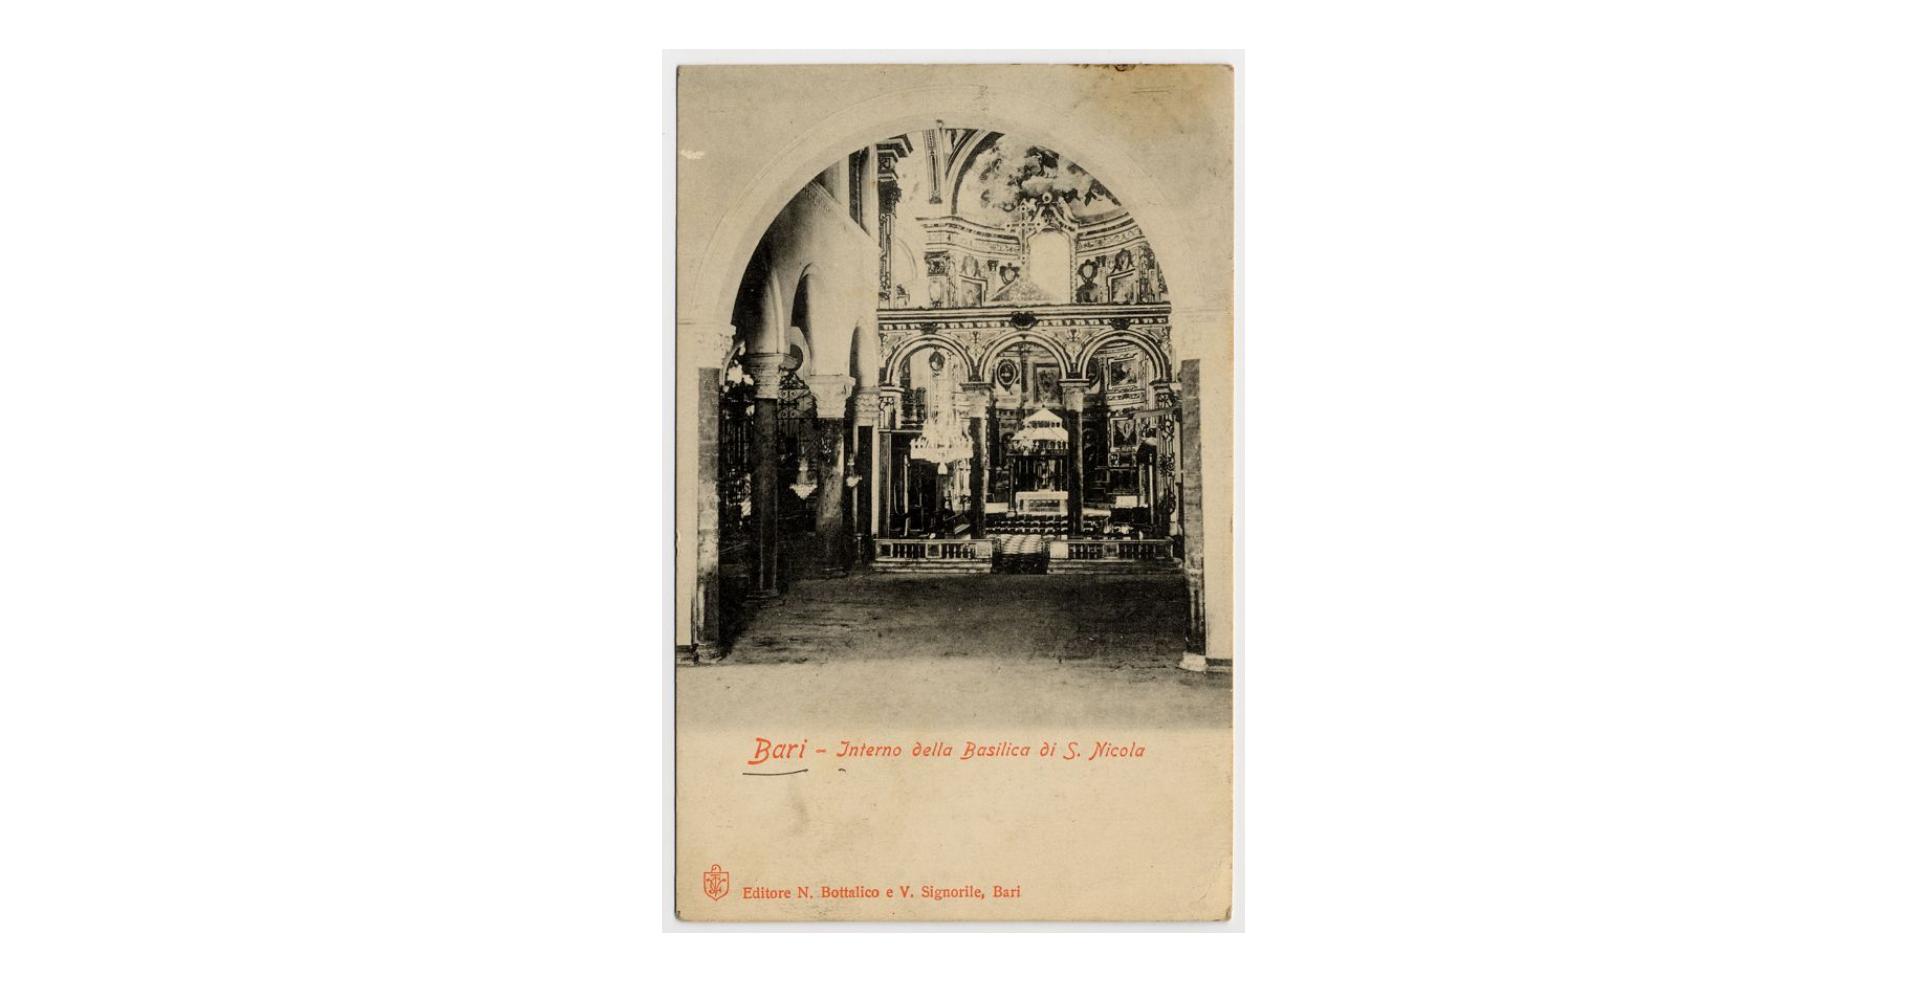 Fotografo non identificato, Bari - Basilica di S. Nicola - Interno, 1910, cartolina, FFC013998